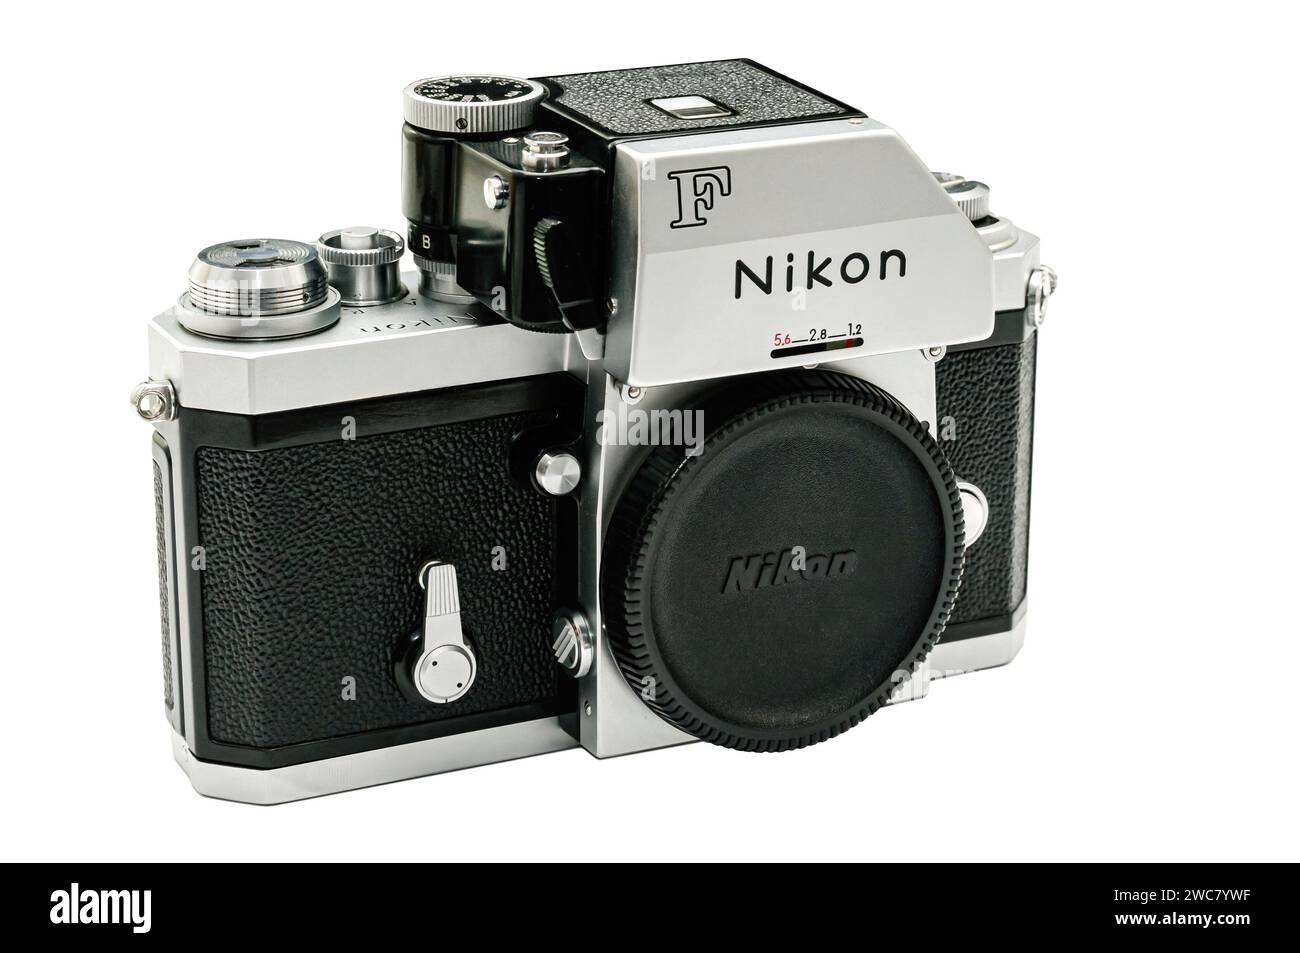 L'iconica fotocamera Nikon F, uno spirito vintage capolavoro dell'epoca d'oro della fotografia analogica. Foto Stock